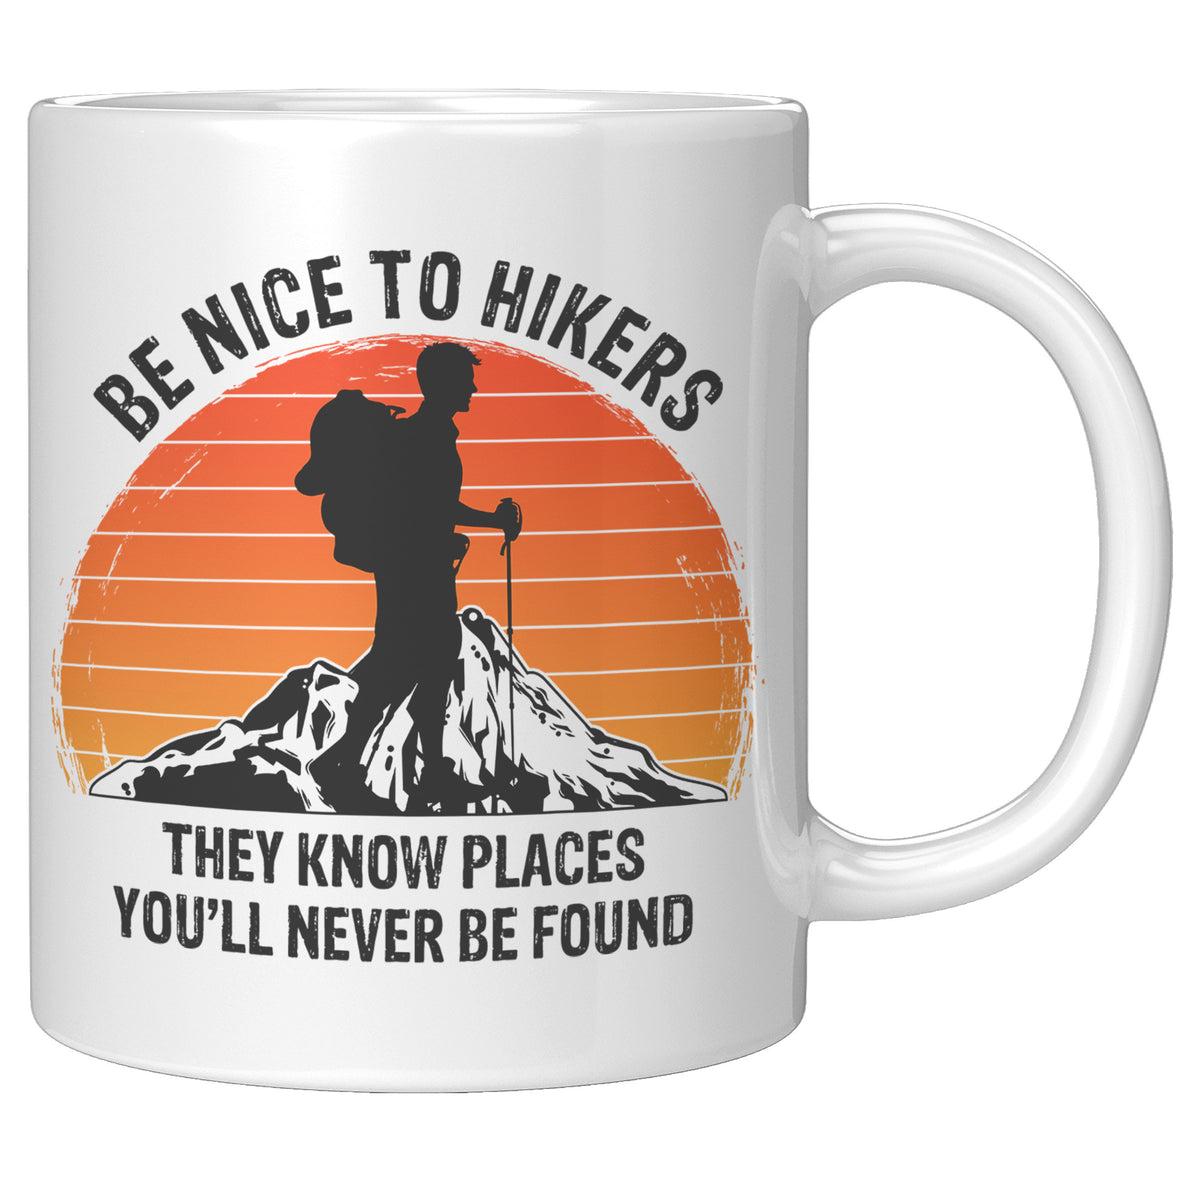 Hiking Gift Mug - Be Nice to Hikers